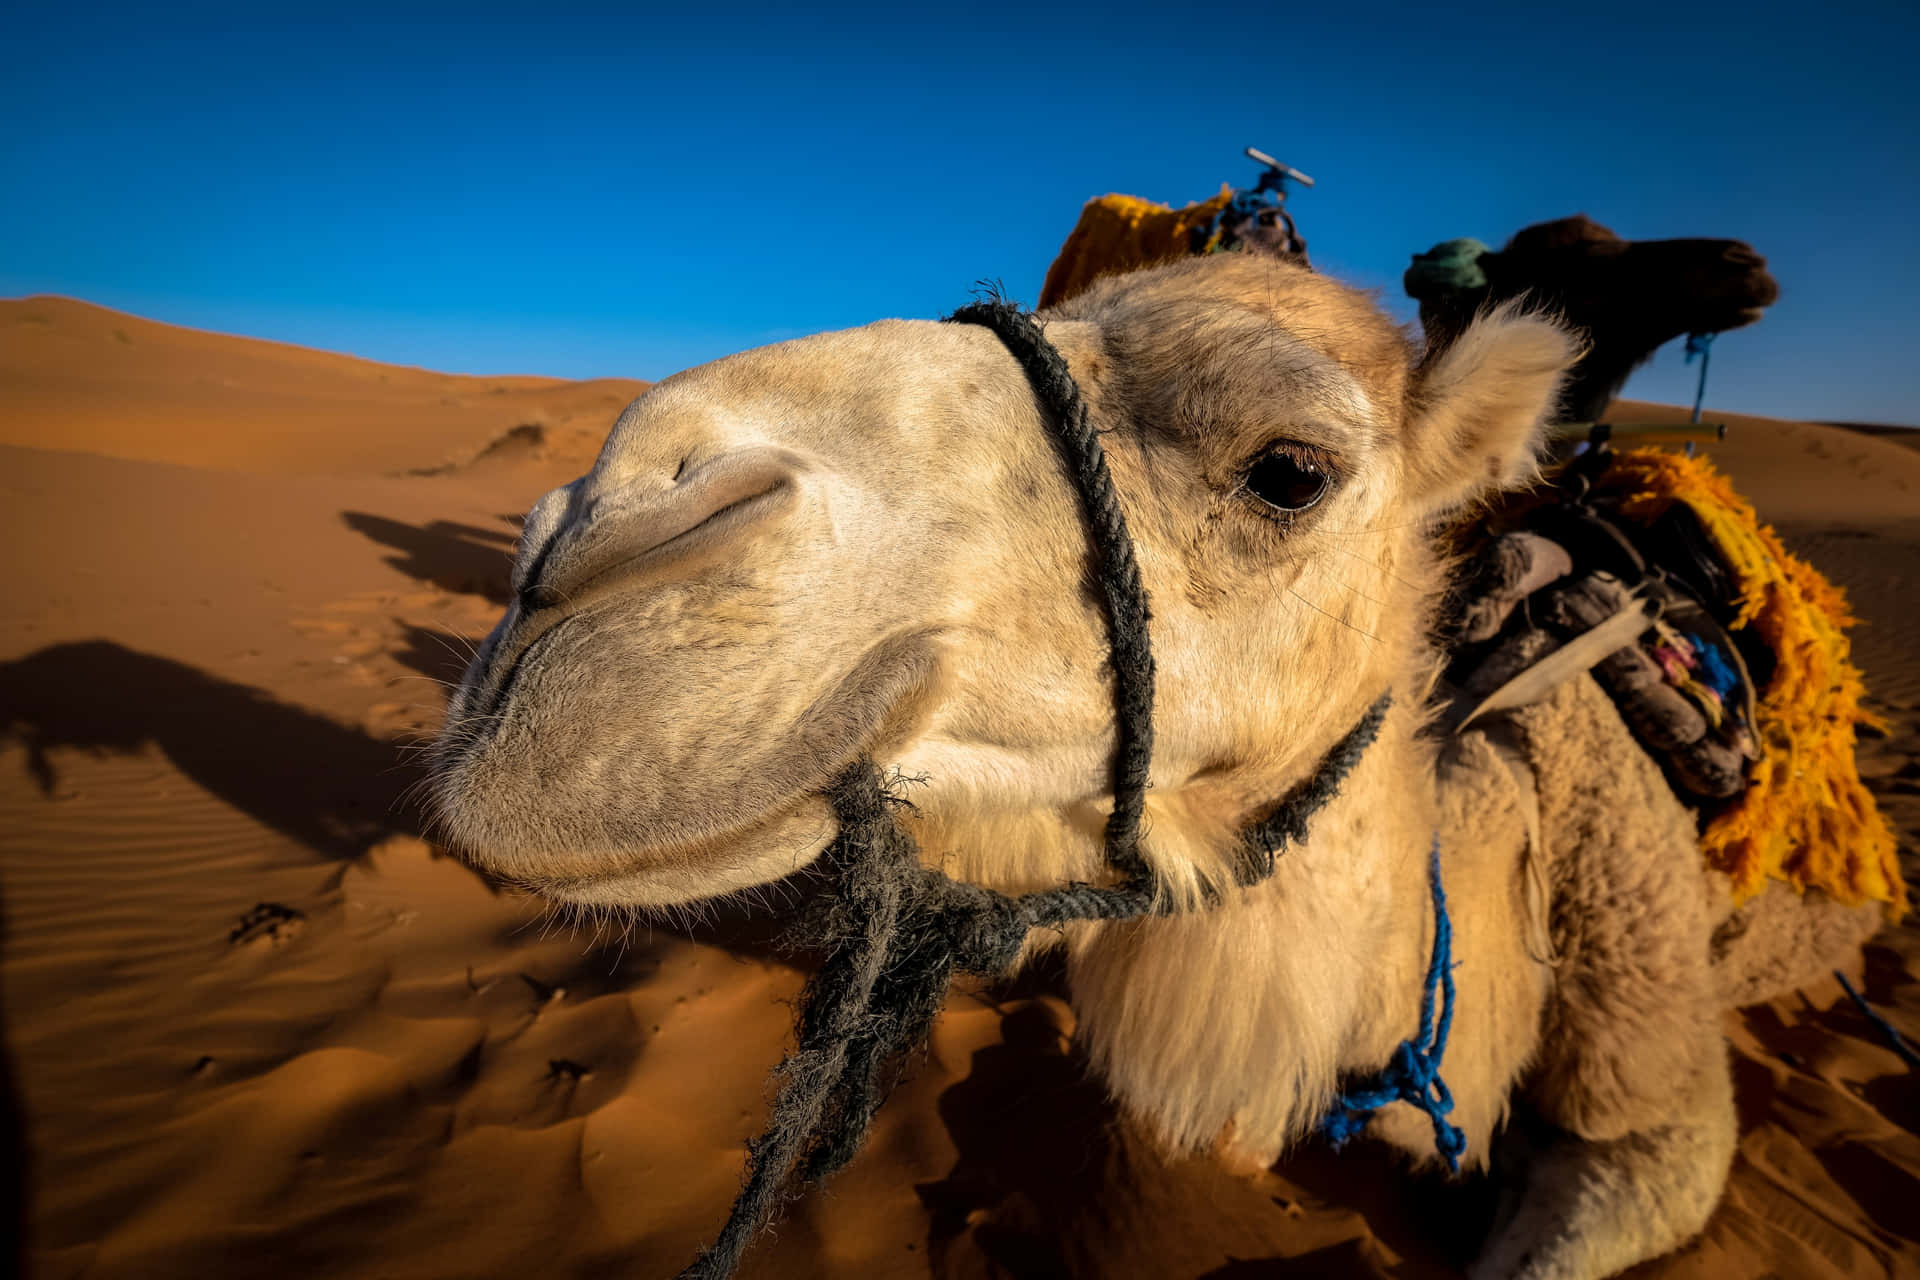 Riding the Dunes in the Arabian Desert